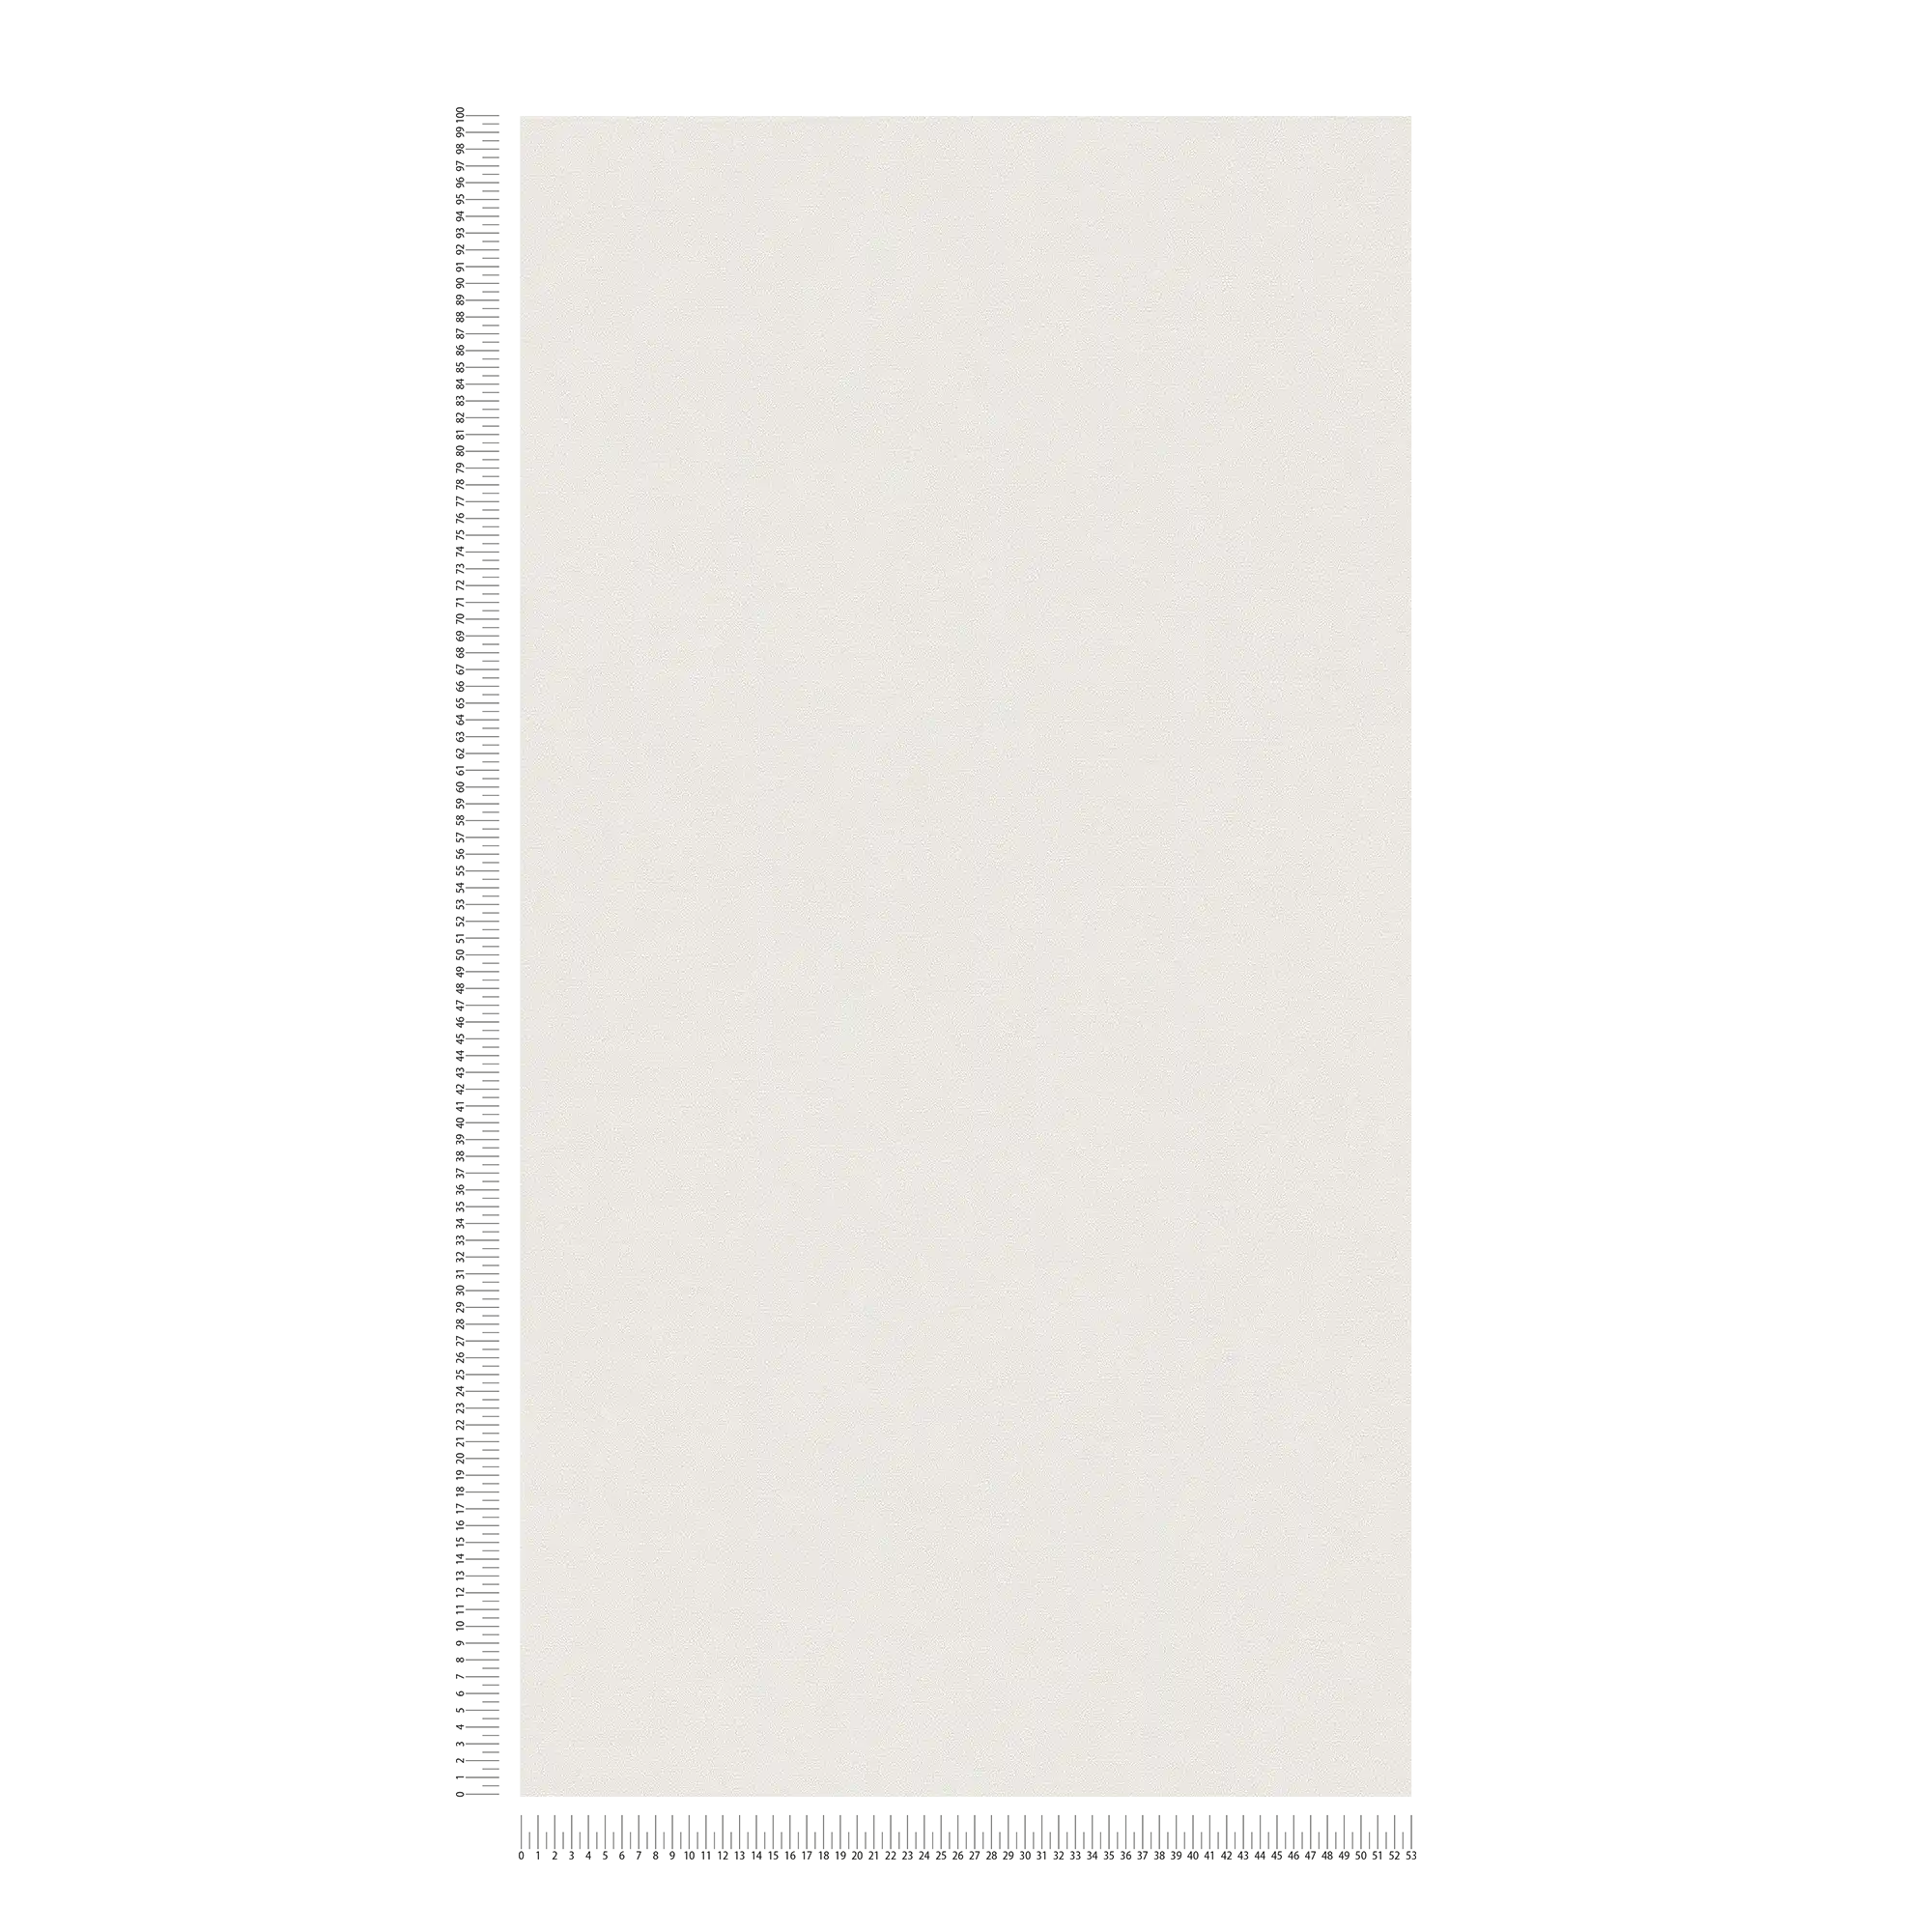             Non-woven wallpaper monochrome in light shades - white
        